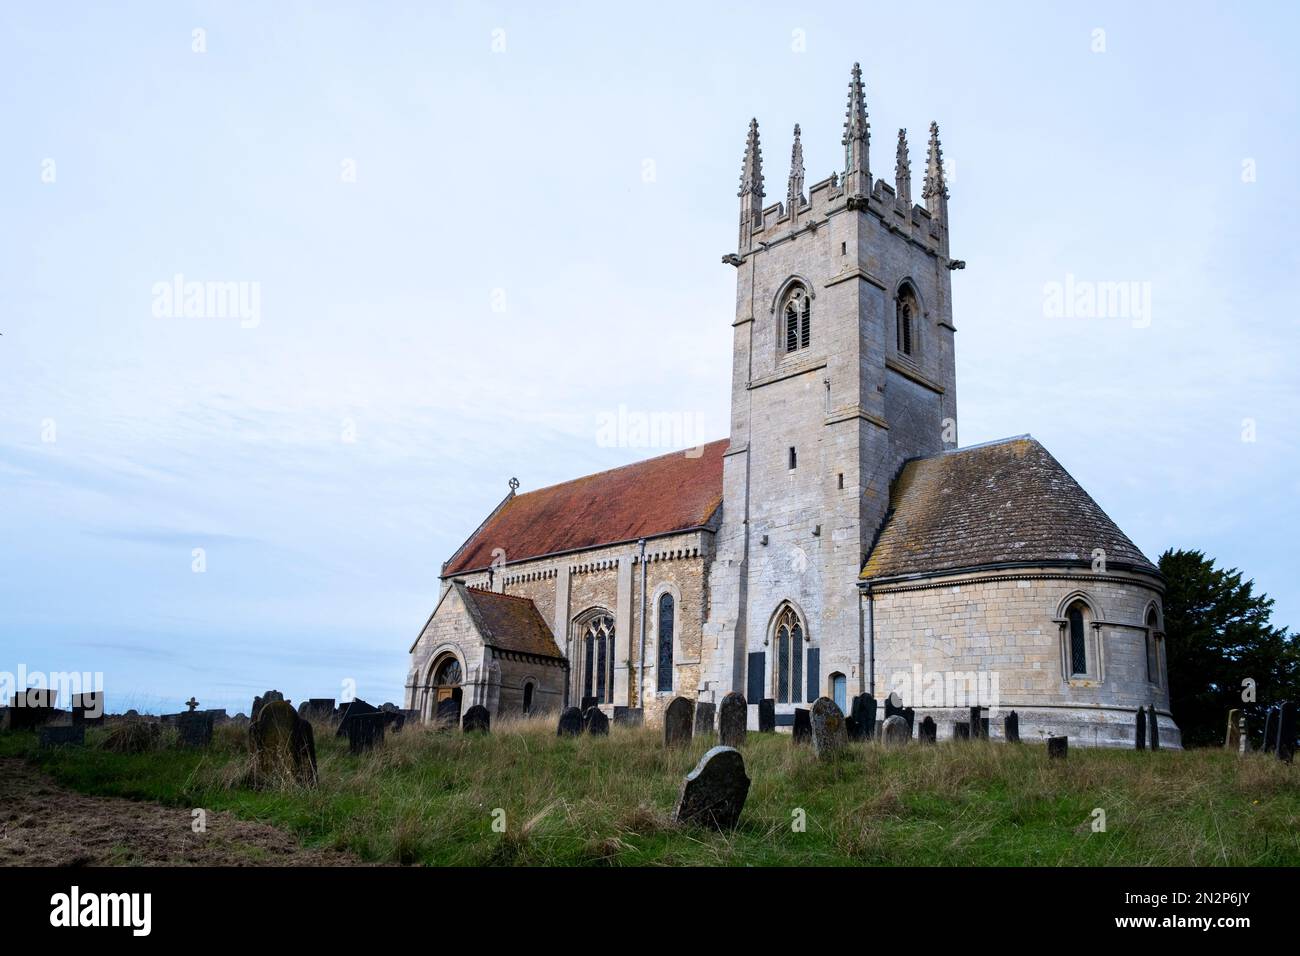 Église St Andrews, Sempringham, Lincolnshire. Église médiévale et site d'un ancien prieuré. Lieu de sépulture de St. Gilbert fondateur de l'ordre Gilbertine Banque D'Images